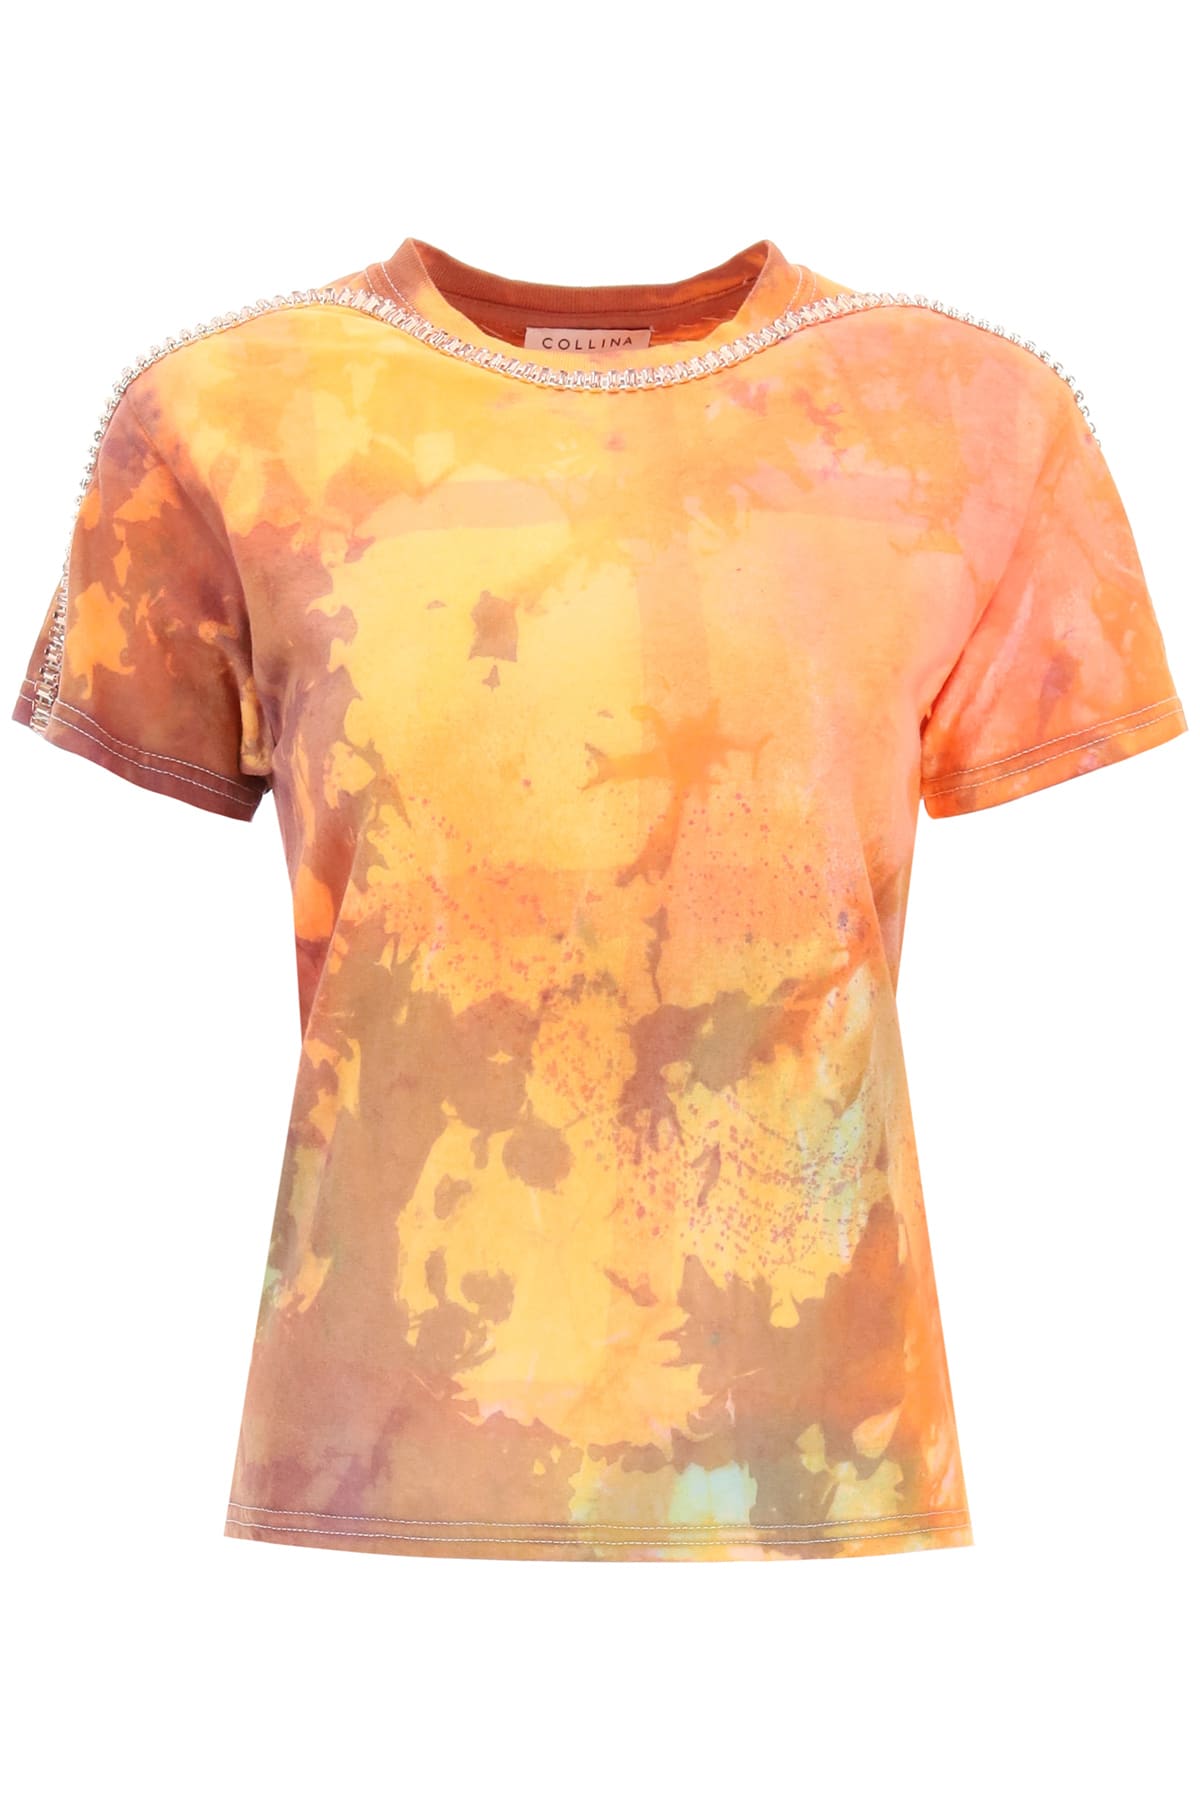 Collina Strada Sporty Spice Tie-dye T-shirt